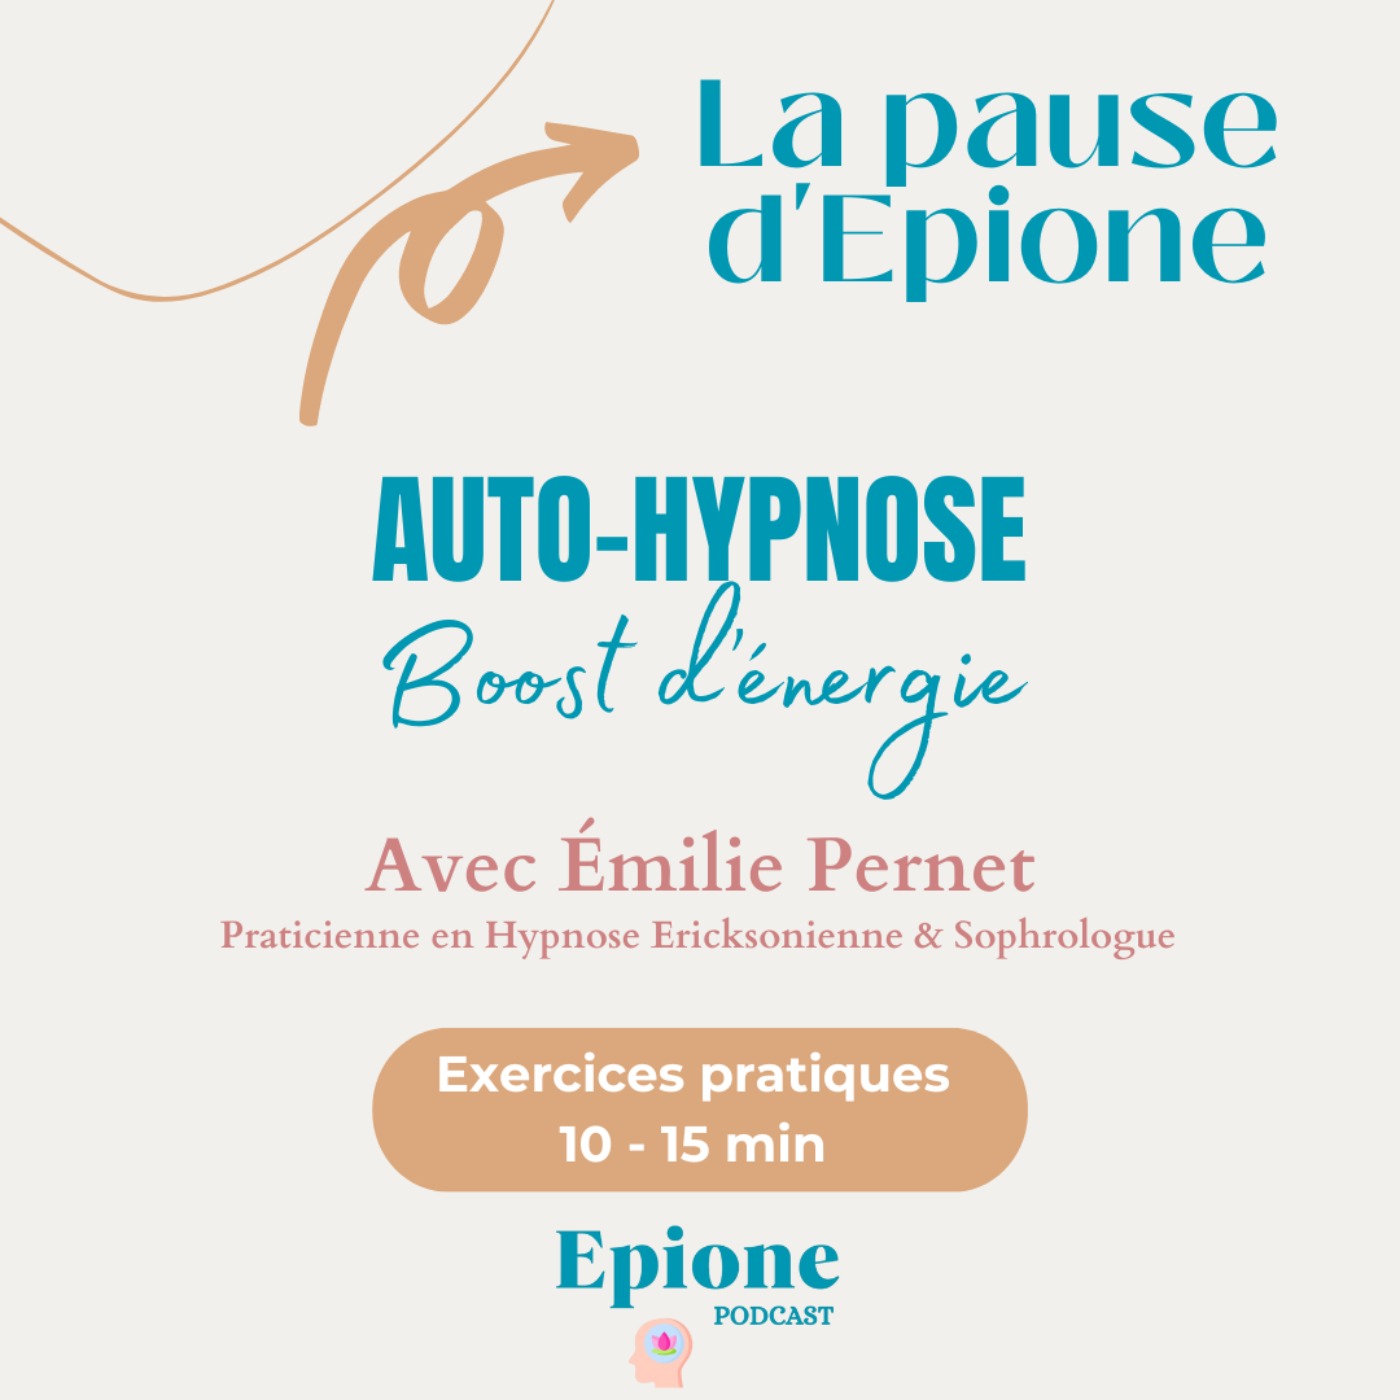 Série Auto-Hypnose #2  - Boost d'énergie avec Emilie Pernet (exercices pratiques)